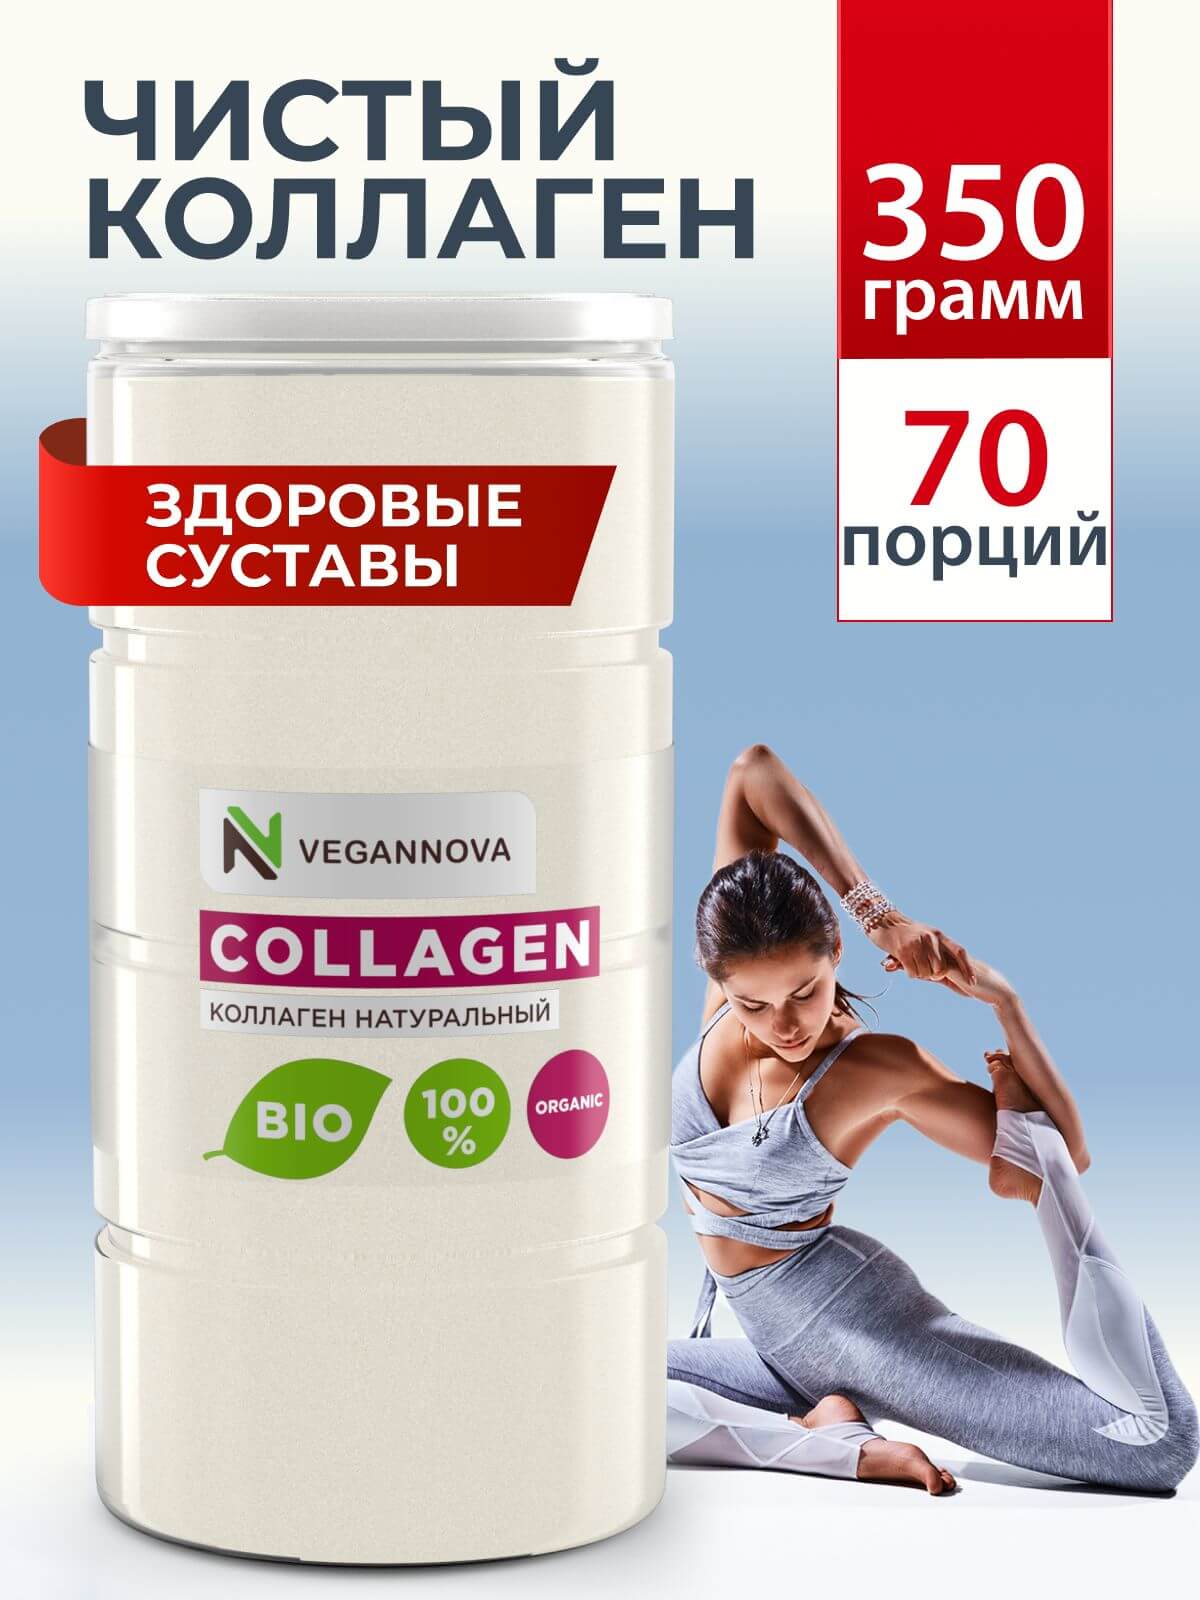 VeganNova Коллаген говяжий 1 и 3 типа, для волос, лица, суставов и связок, питьевой порошок, 350 г (70 порций)